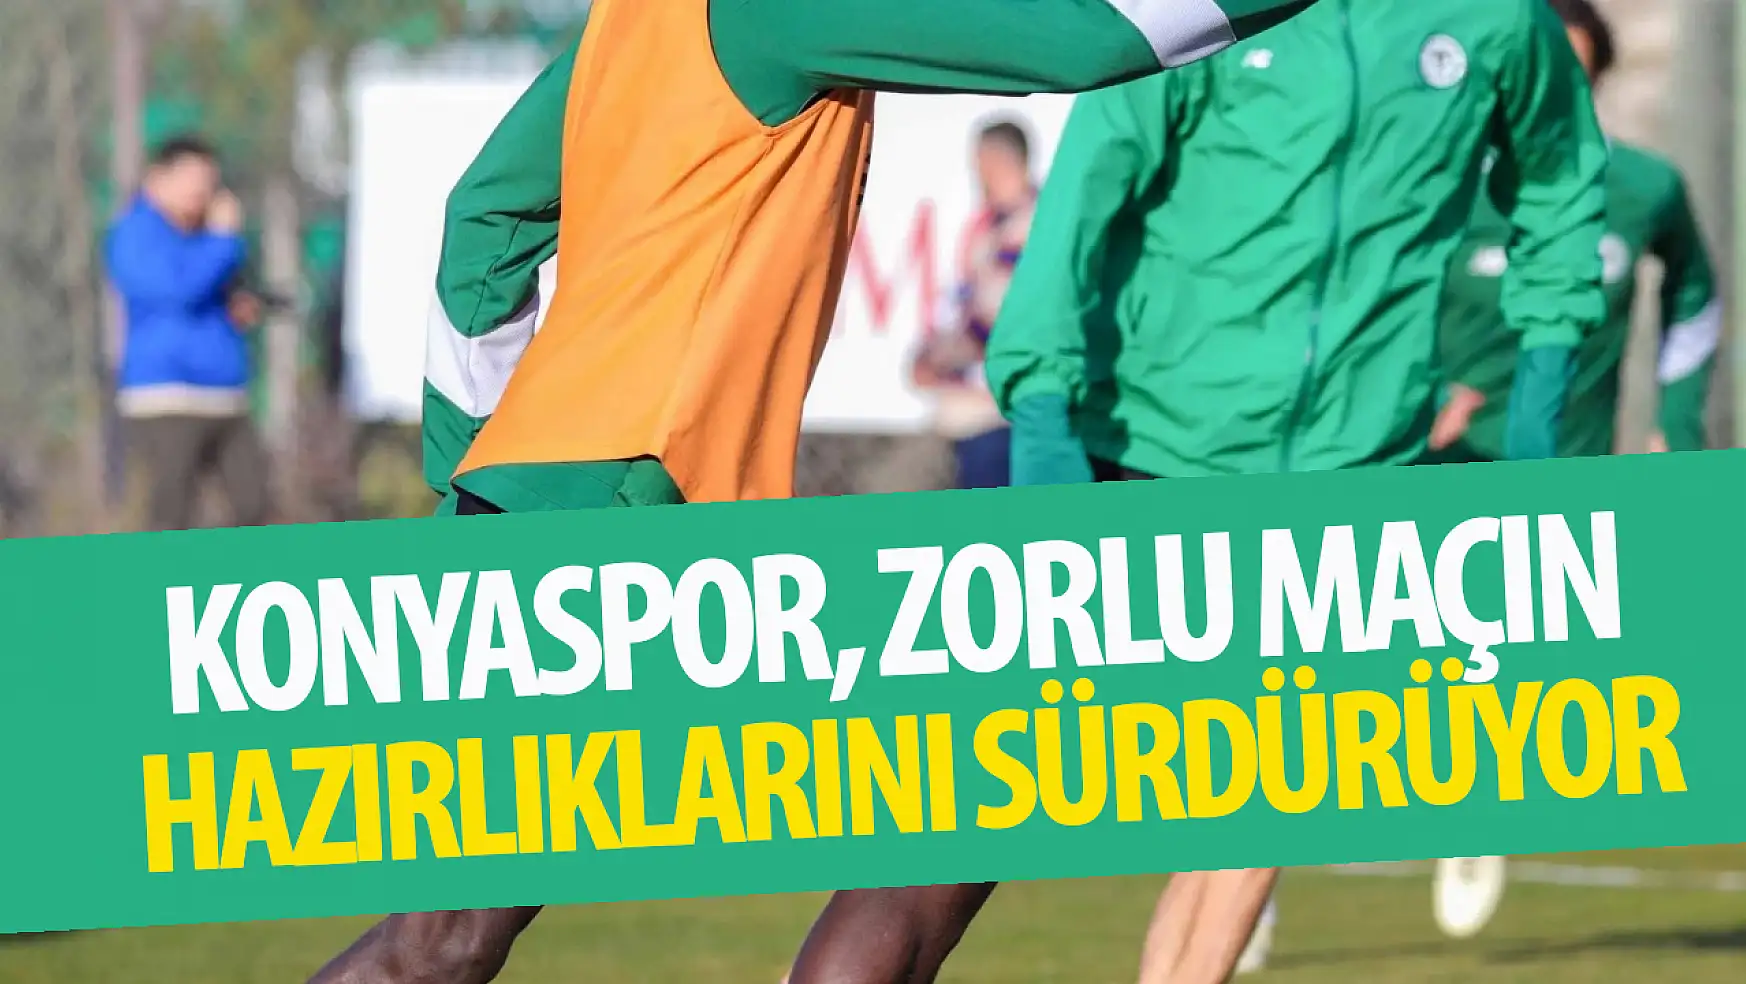 Konyaspor, zorlu maçın hazırlıklarını sürdürüyor!